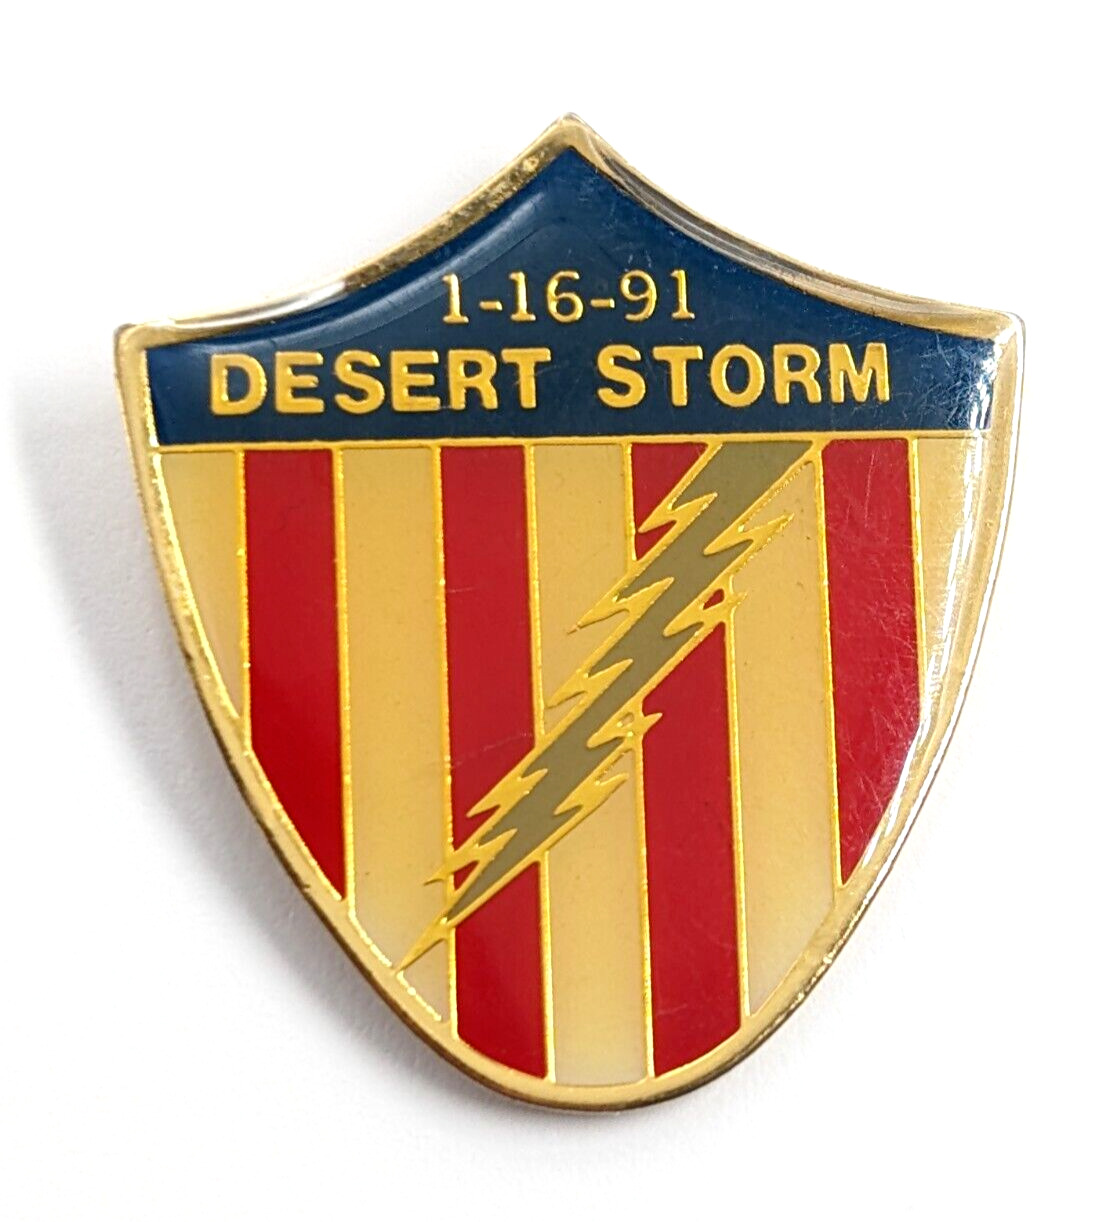 VTG 1991 Desert Storm Shield 1-16-91 American Flag Lightning Pin US Military